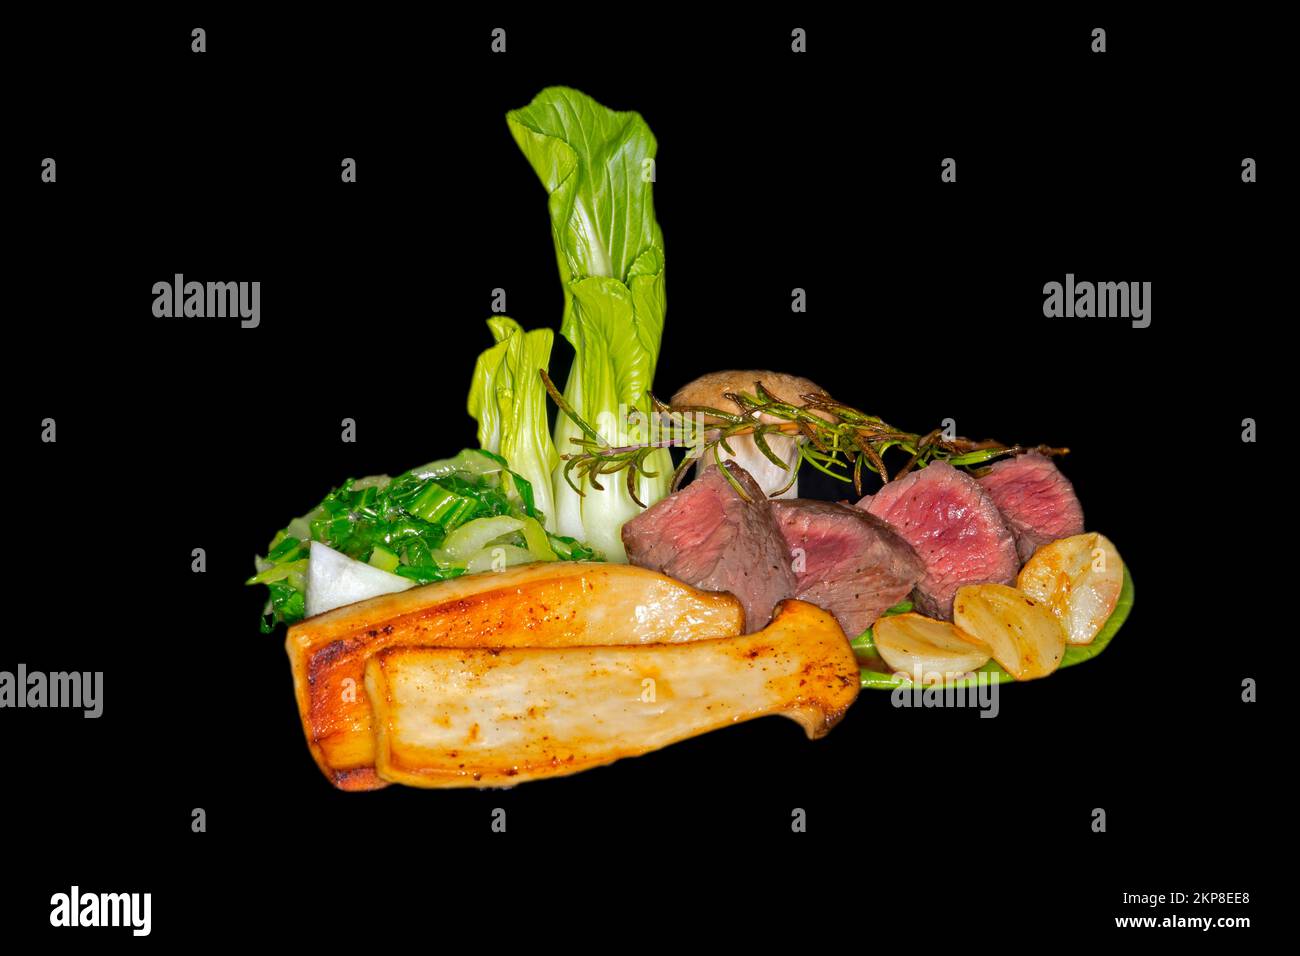 Filetto di cervo medio arrosto con pak choi, funghi alle erbe, rametto al rosmarino e aglio, fotografia del cibo con sfondo nero Foto Stock